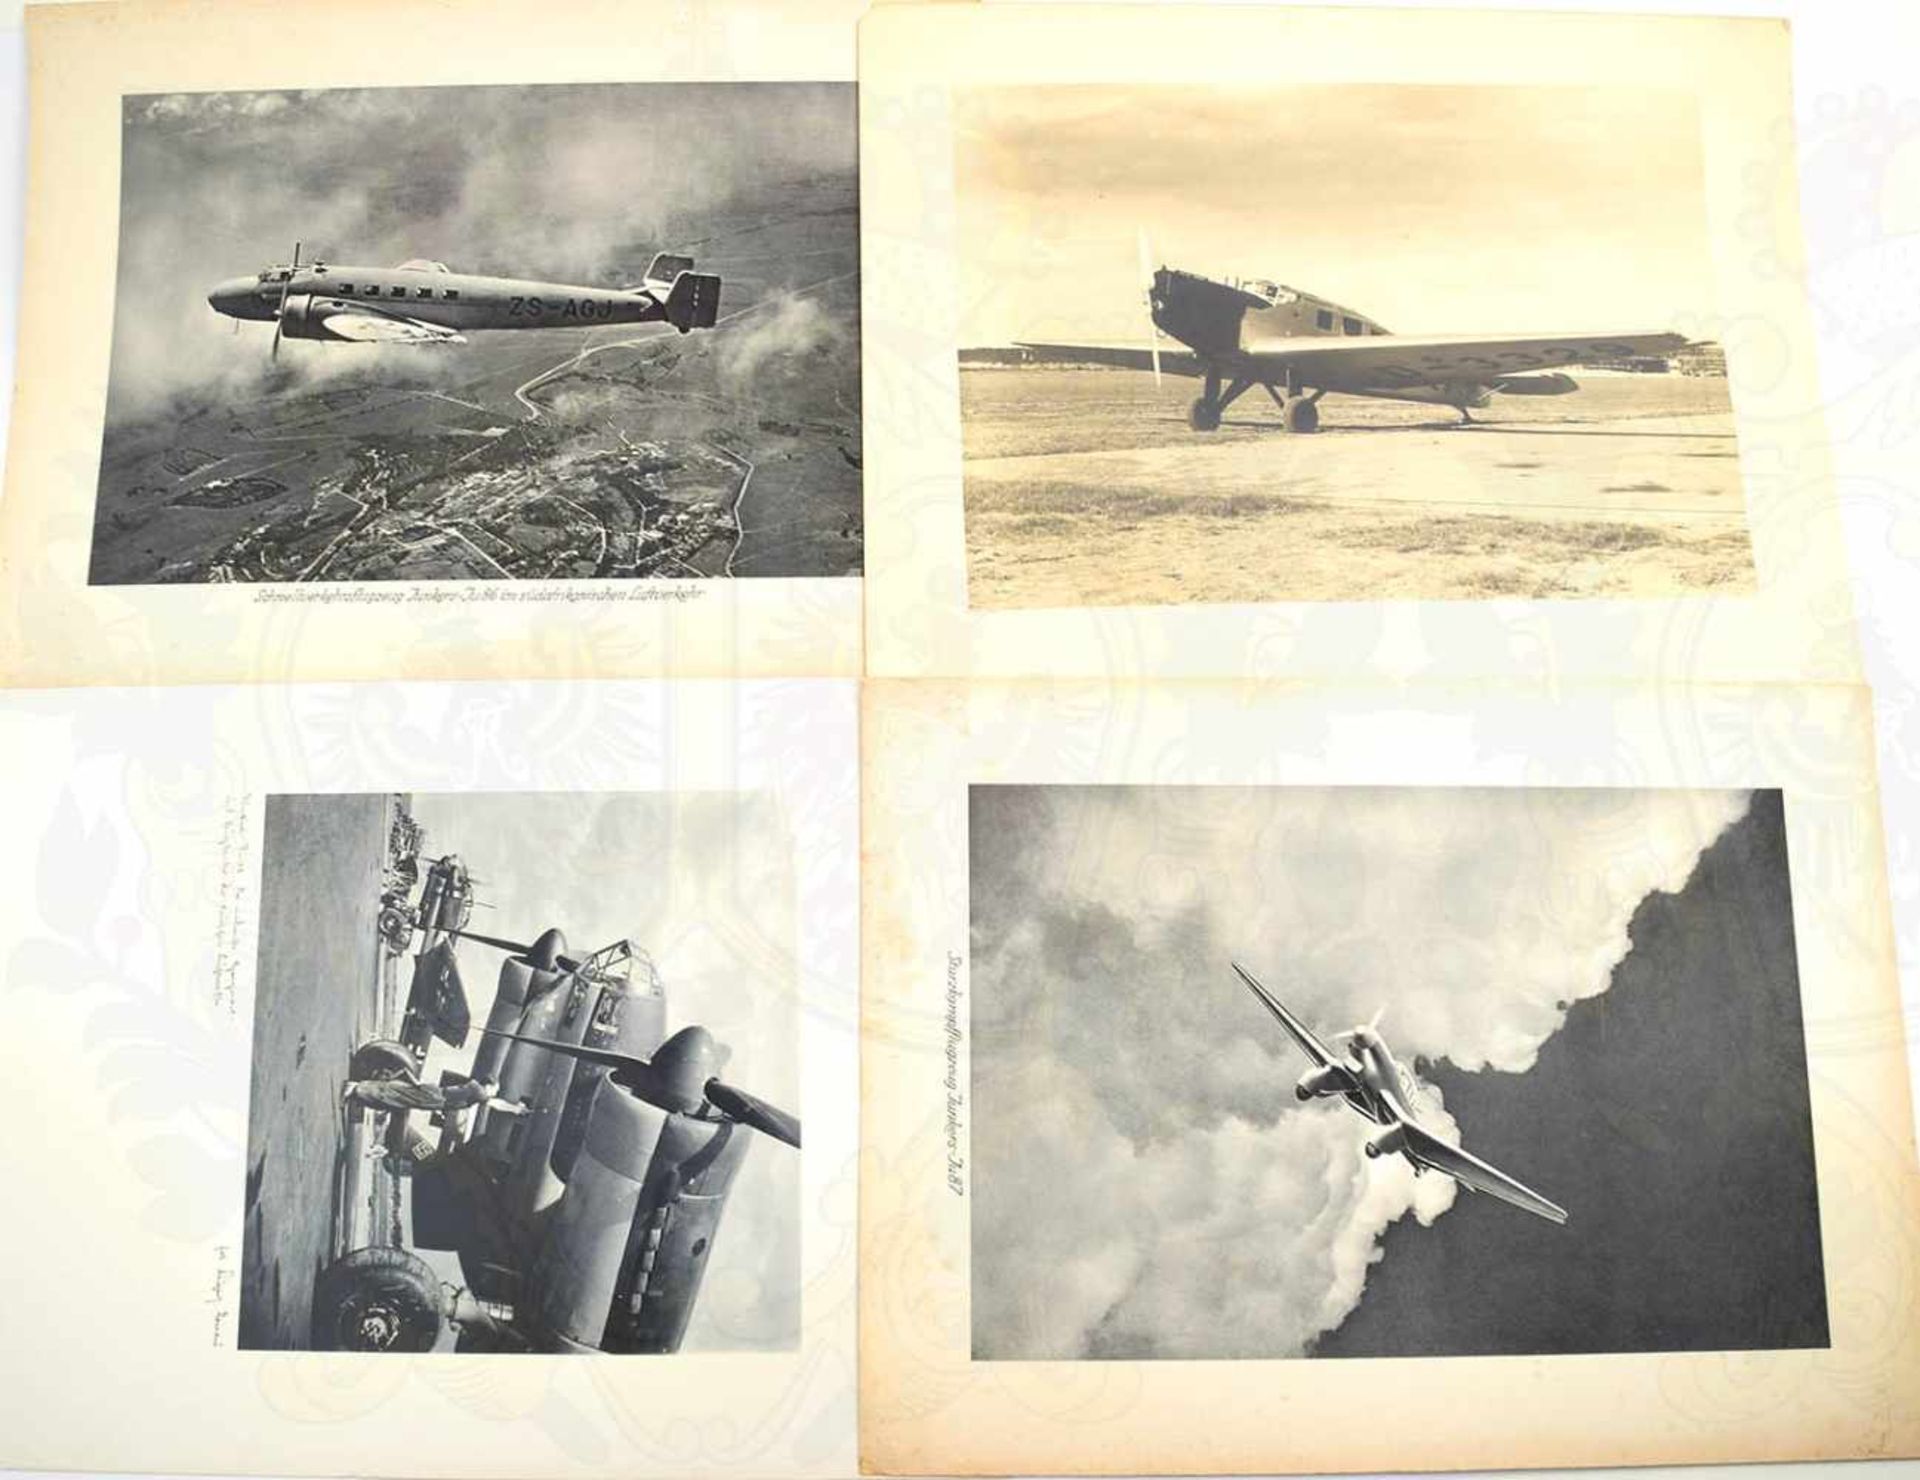 16 KUNSTDRUCKE ZIVIL- UND KAMPFFLUGZEUGE, 1938-1942, startbereite Staffel Ju-88 auf Flugfeld; Me-110 - Bild 2 aus 2